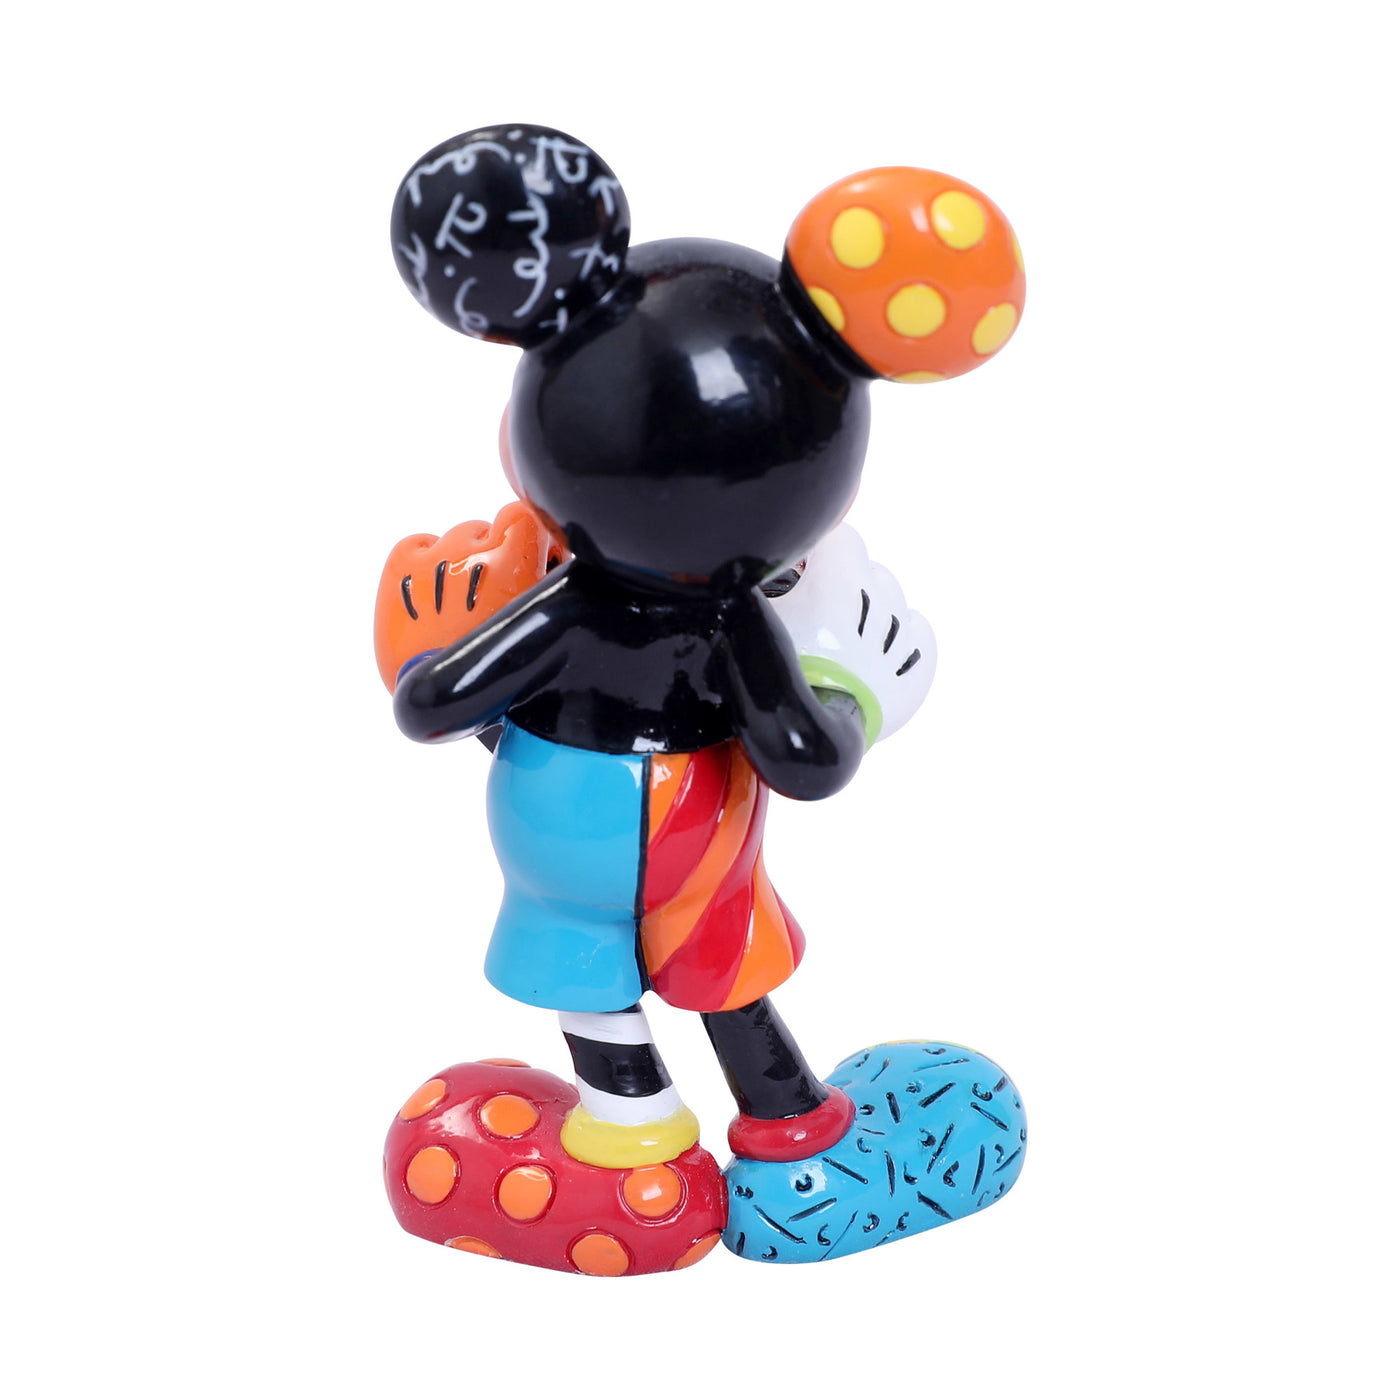 Disney Britto Mini Mickey Mouse Valentine Heart Figurine New with Box